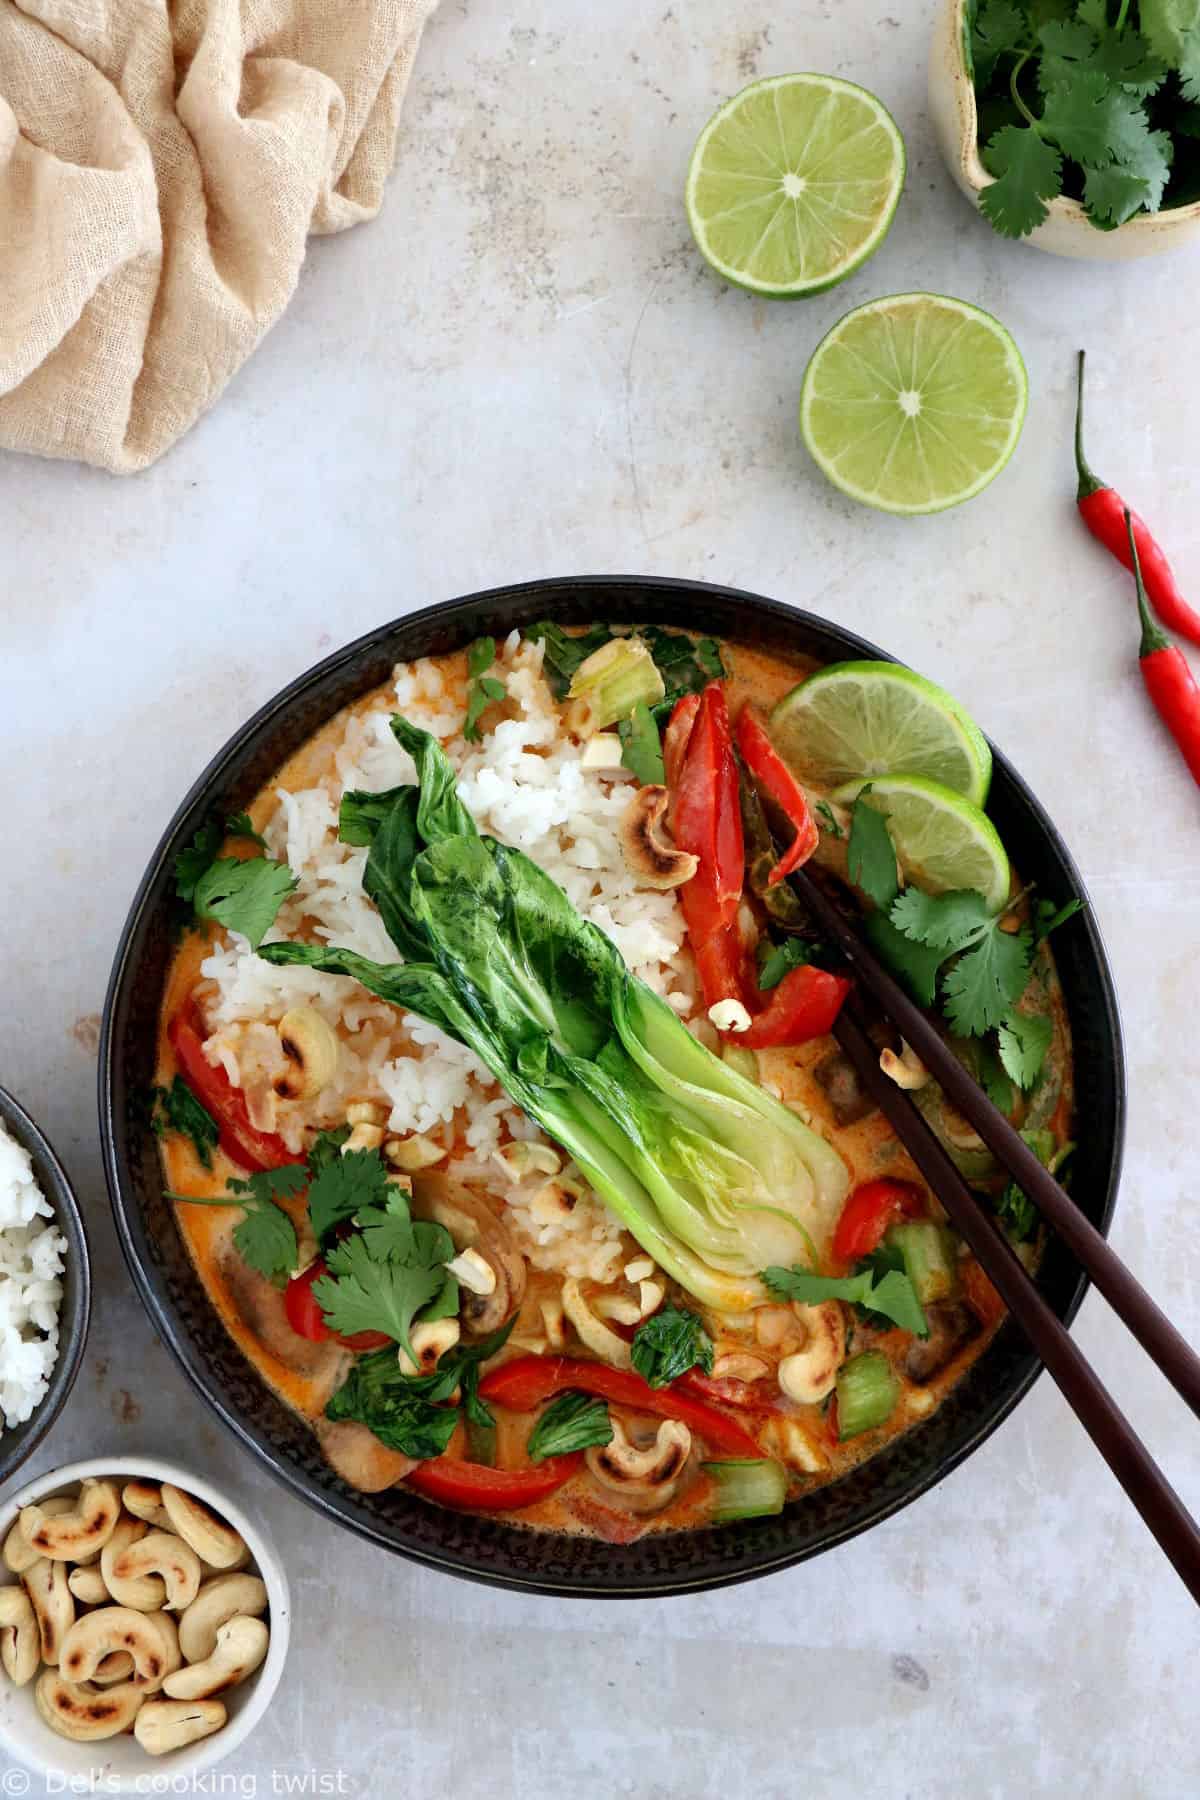 Le curry rouge thaï au bok choy est une recette de curry rouge aux légumes très simple à préparer en 30 minutes seulement.